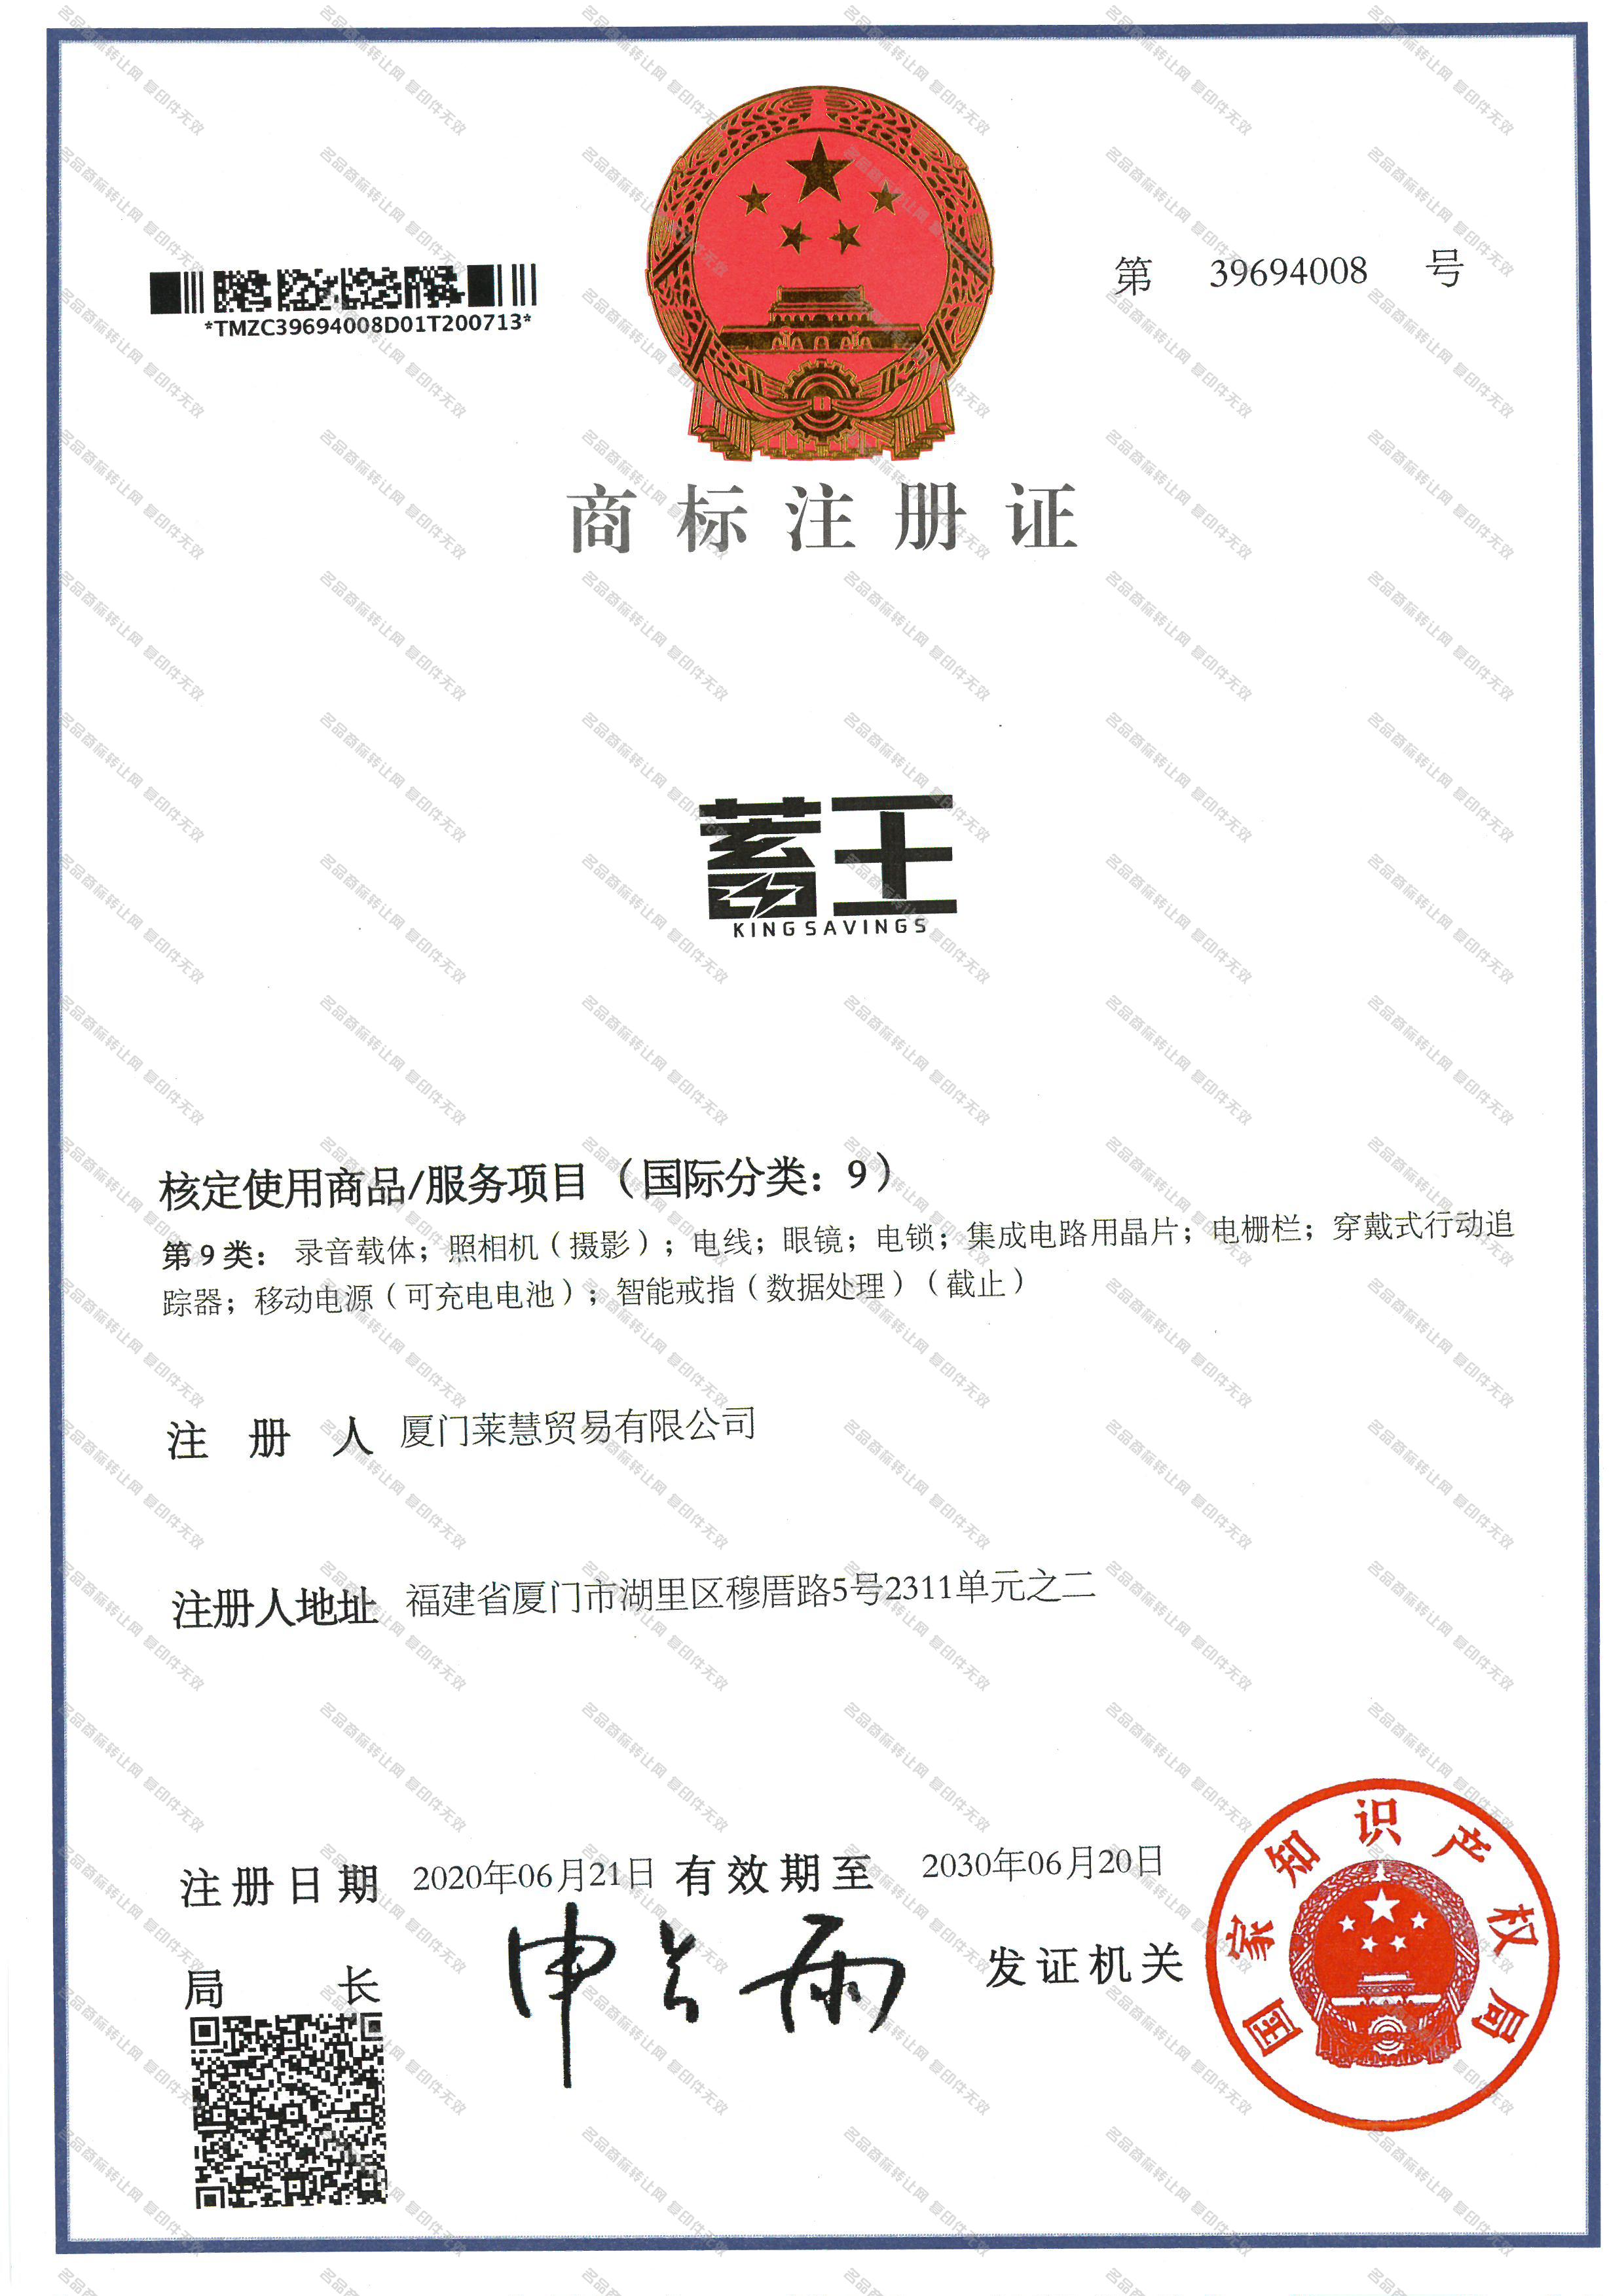 蓄王 KING SAVINGS注册证